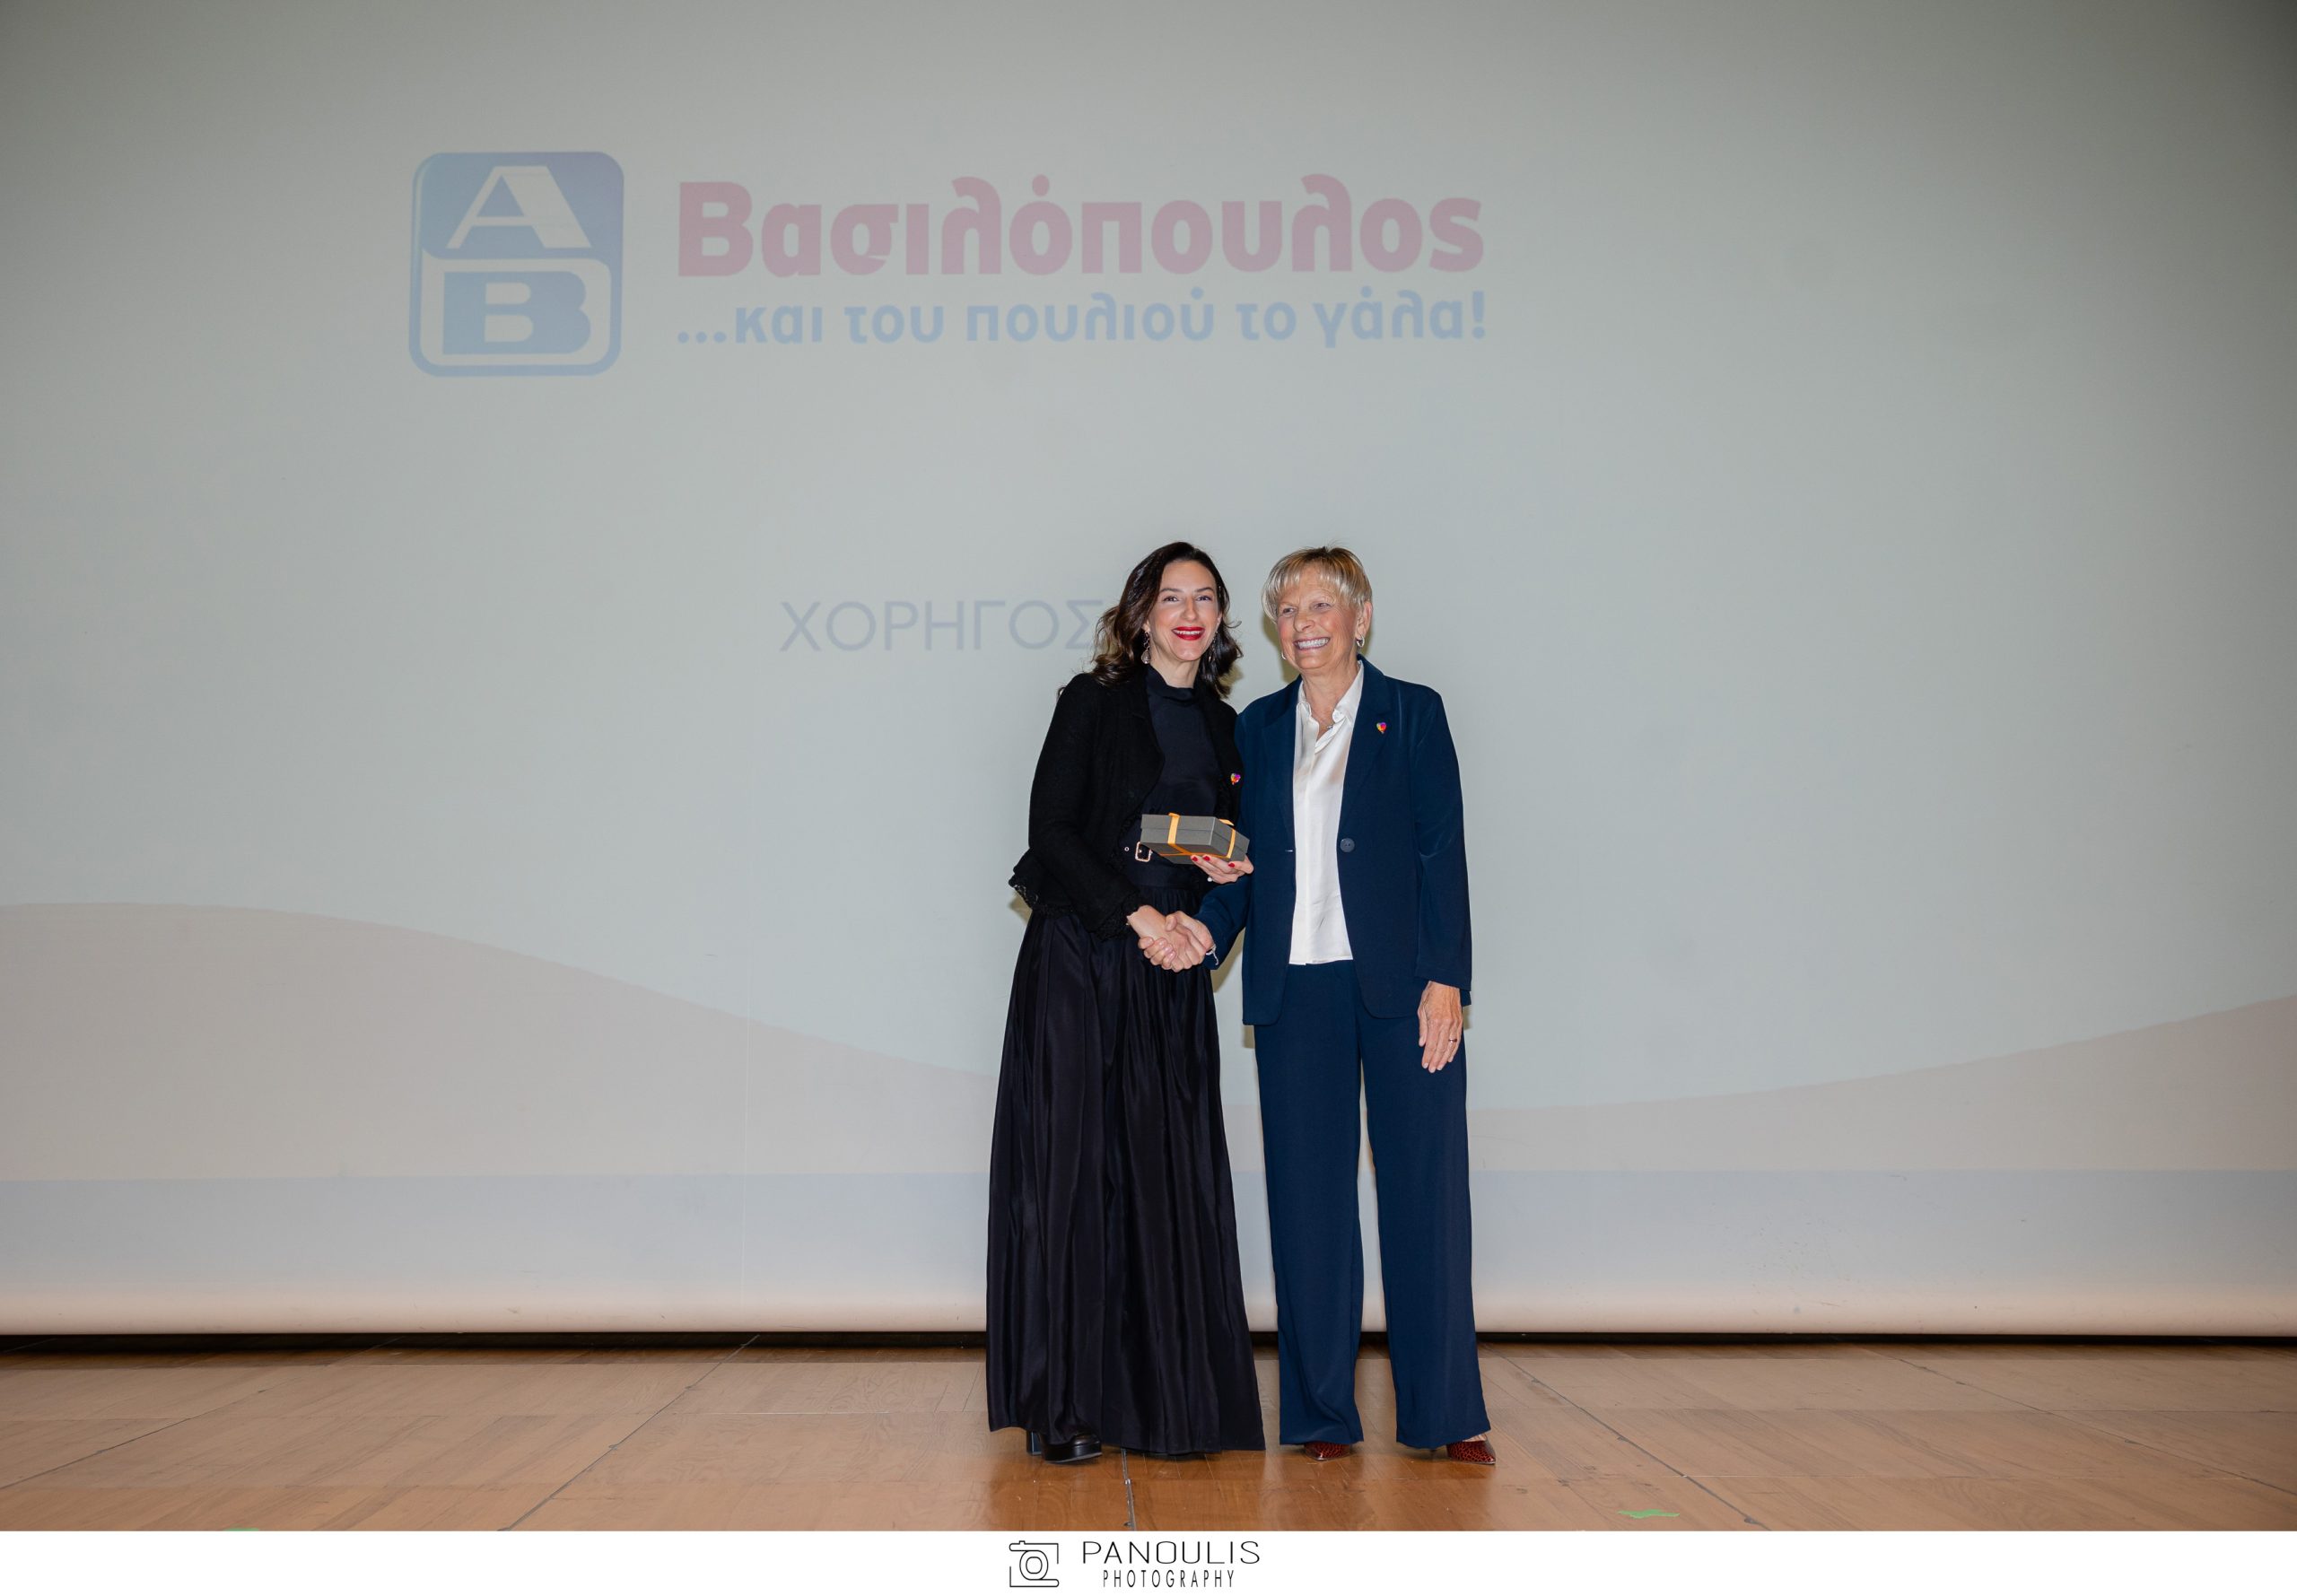 (από αριστερά προς τα δεξιά) Όλγα Μιχαλοπούλου, Vice President Marketing της ΑΒ Βασιλόπουλος, Έρρικα Οικονόμου, Γενική Γραμματέας και Μέλος ΔΣ του «Μαζί για το Παιδί» 